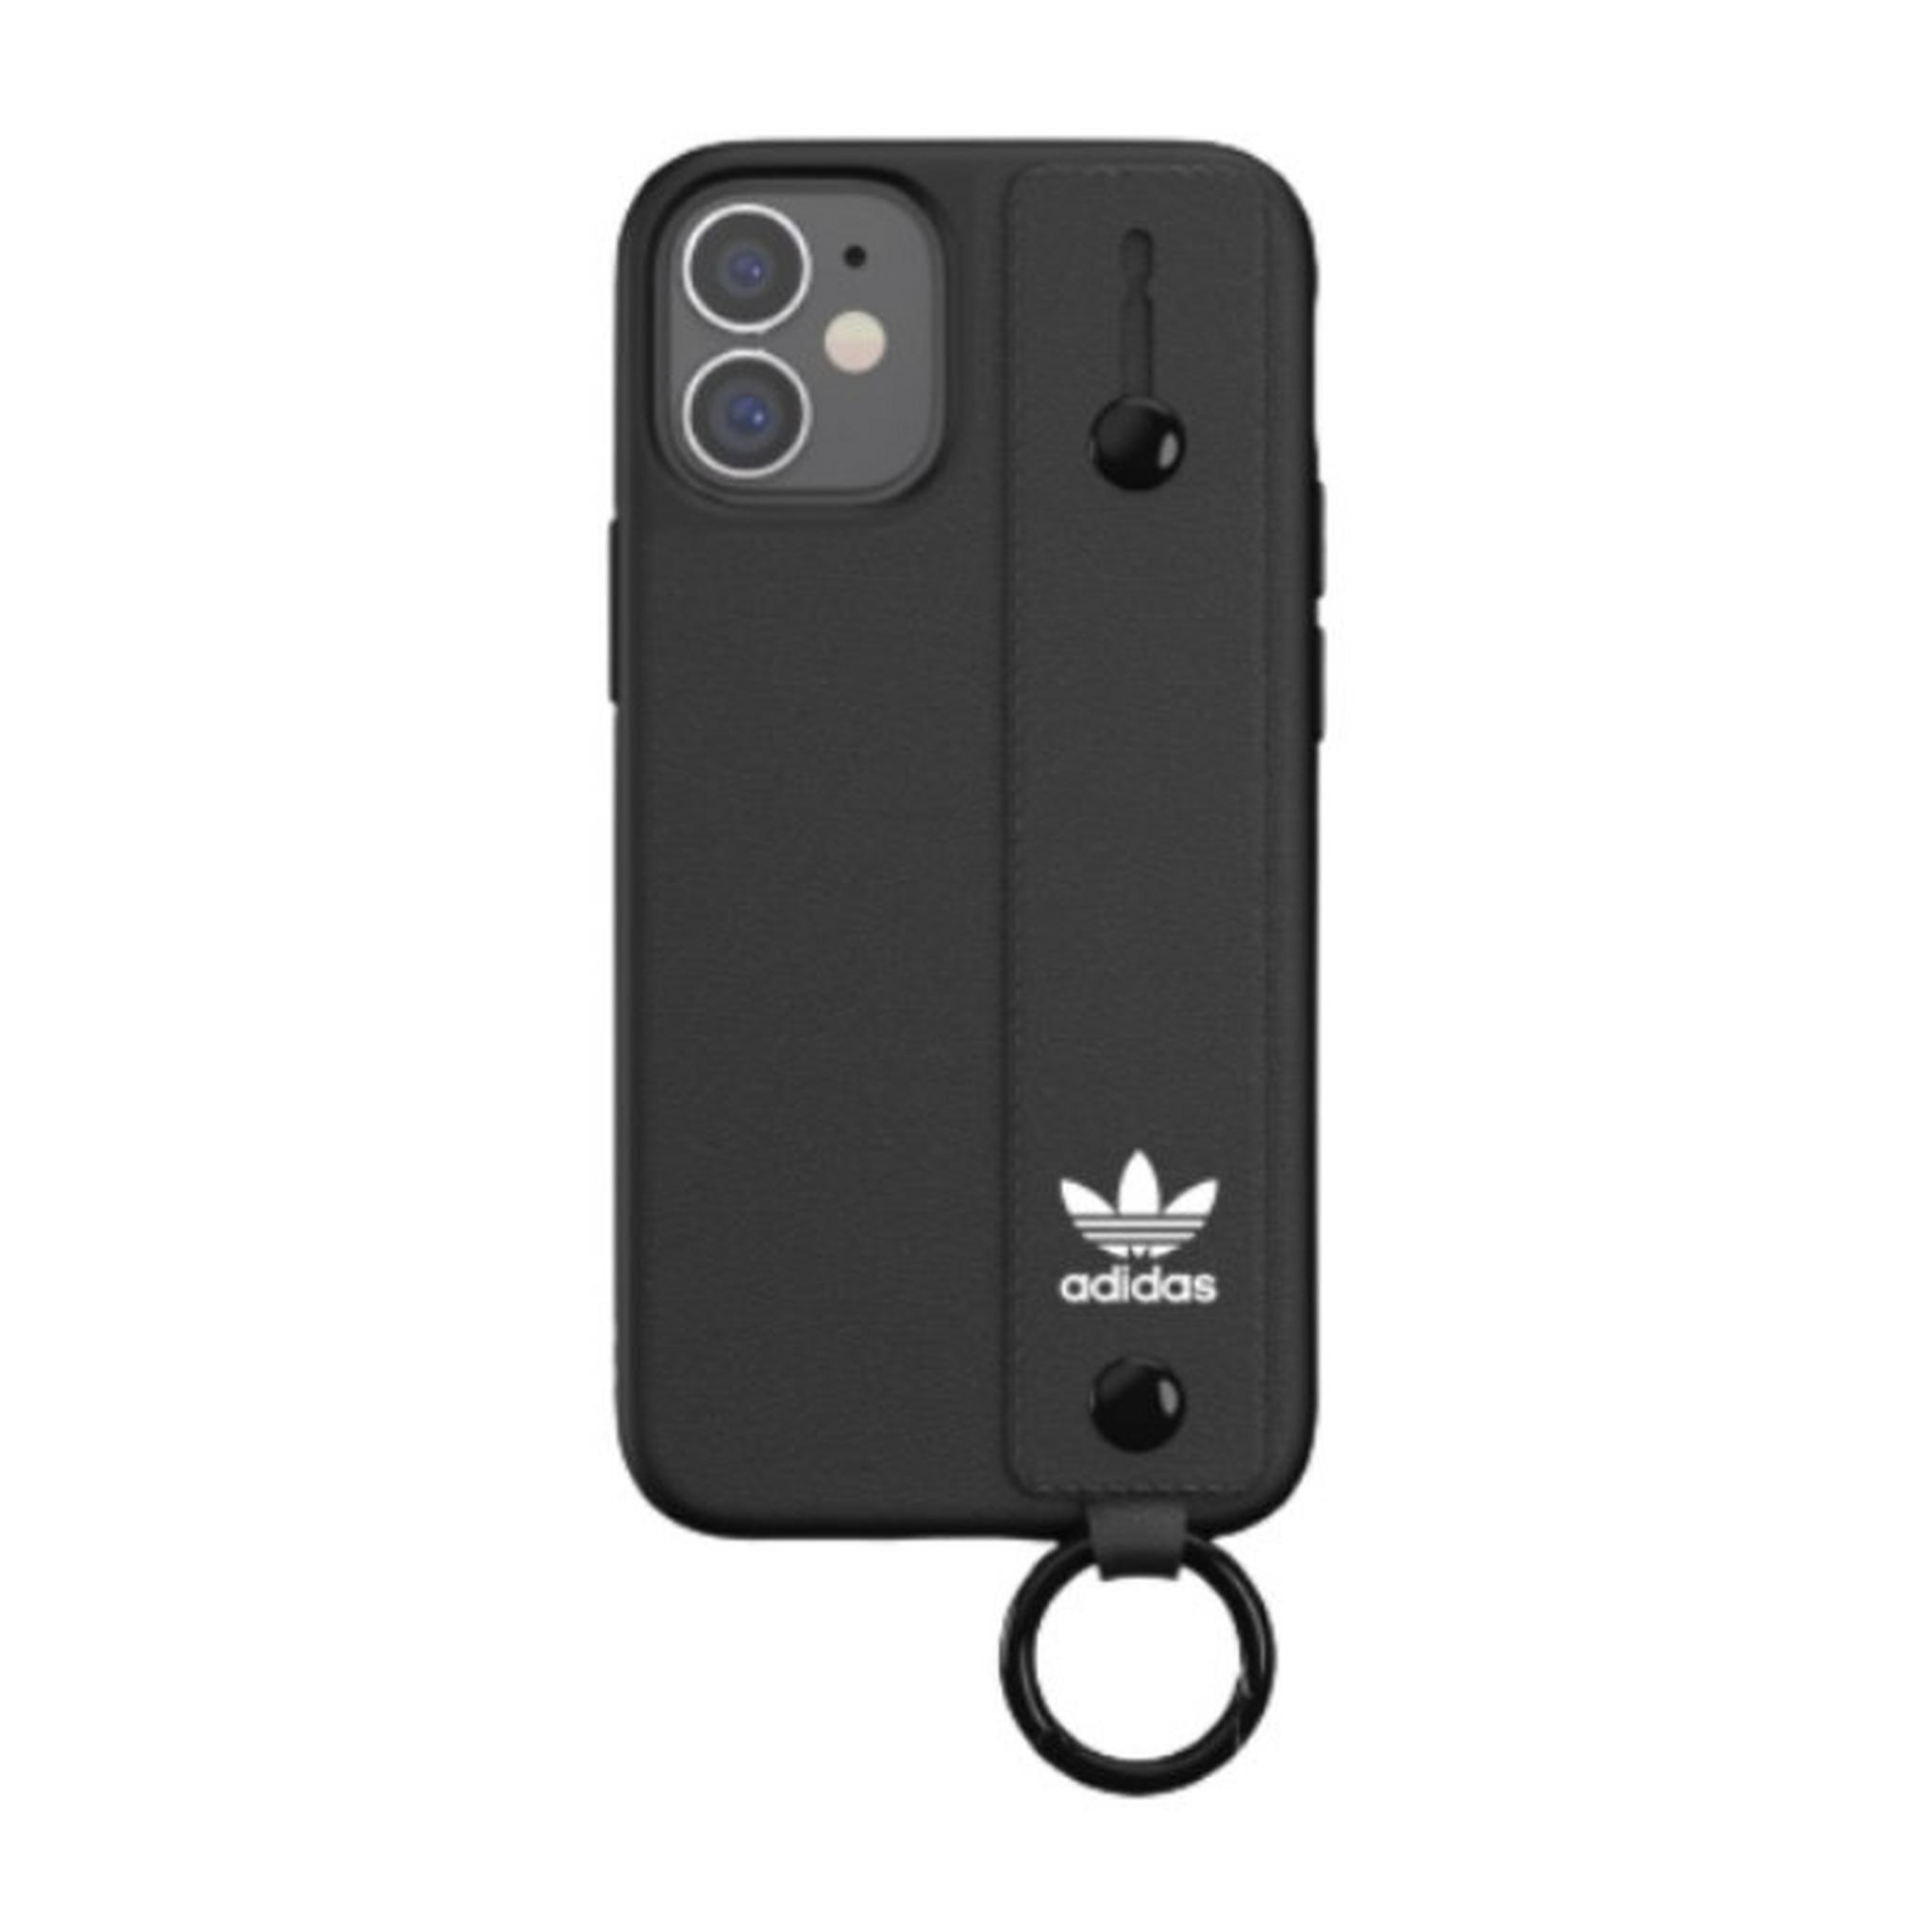 Adidas Original iPhone 12 Mini Hand Strap Case - Black